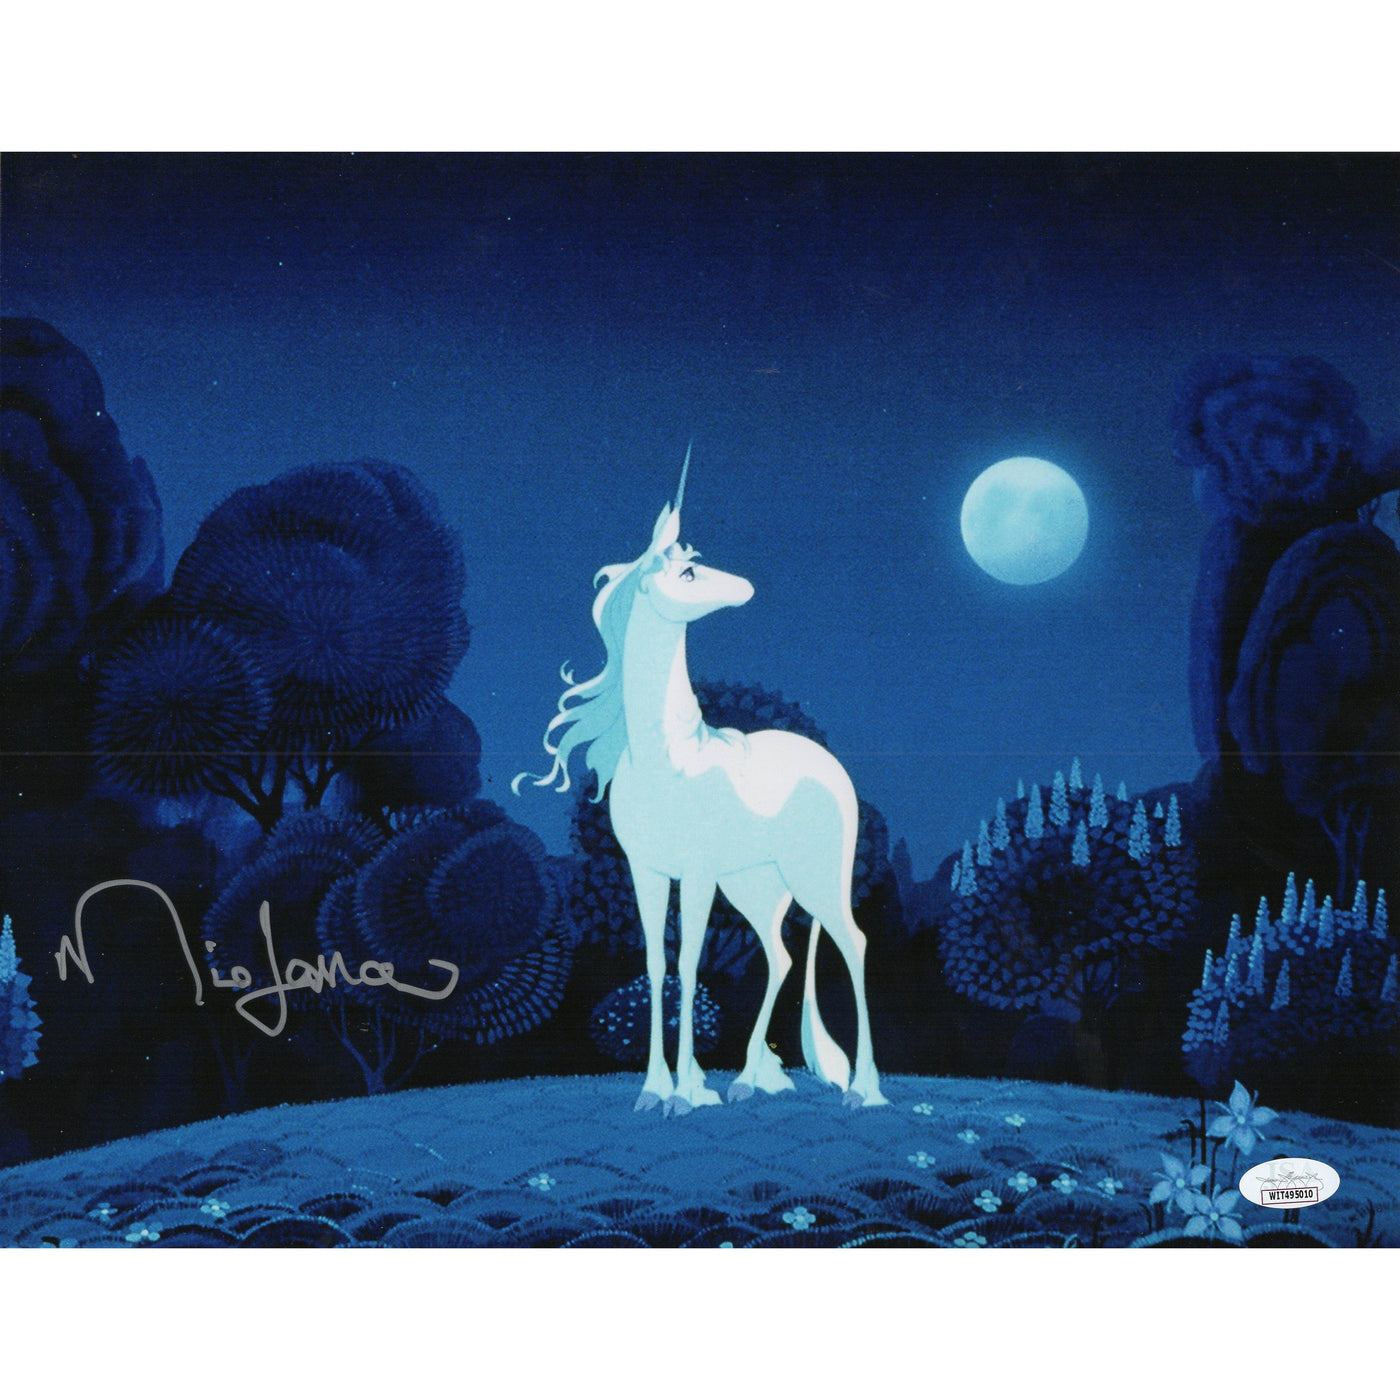 Mia Farrow Signed 11x14 Photo The Last Unicorn Autographed Rare JSA COA